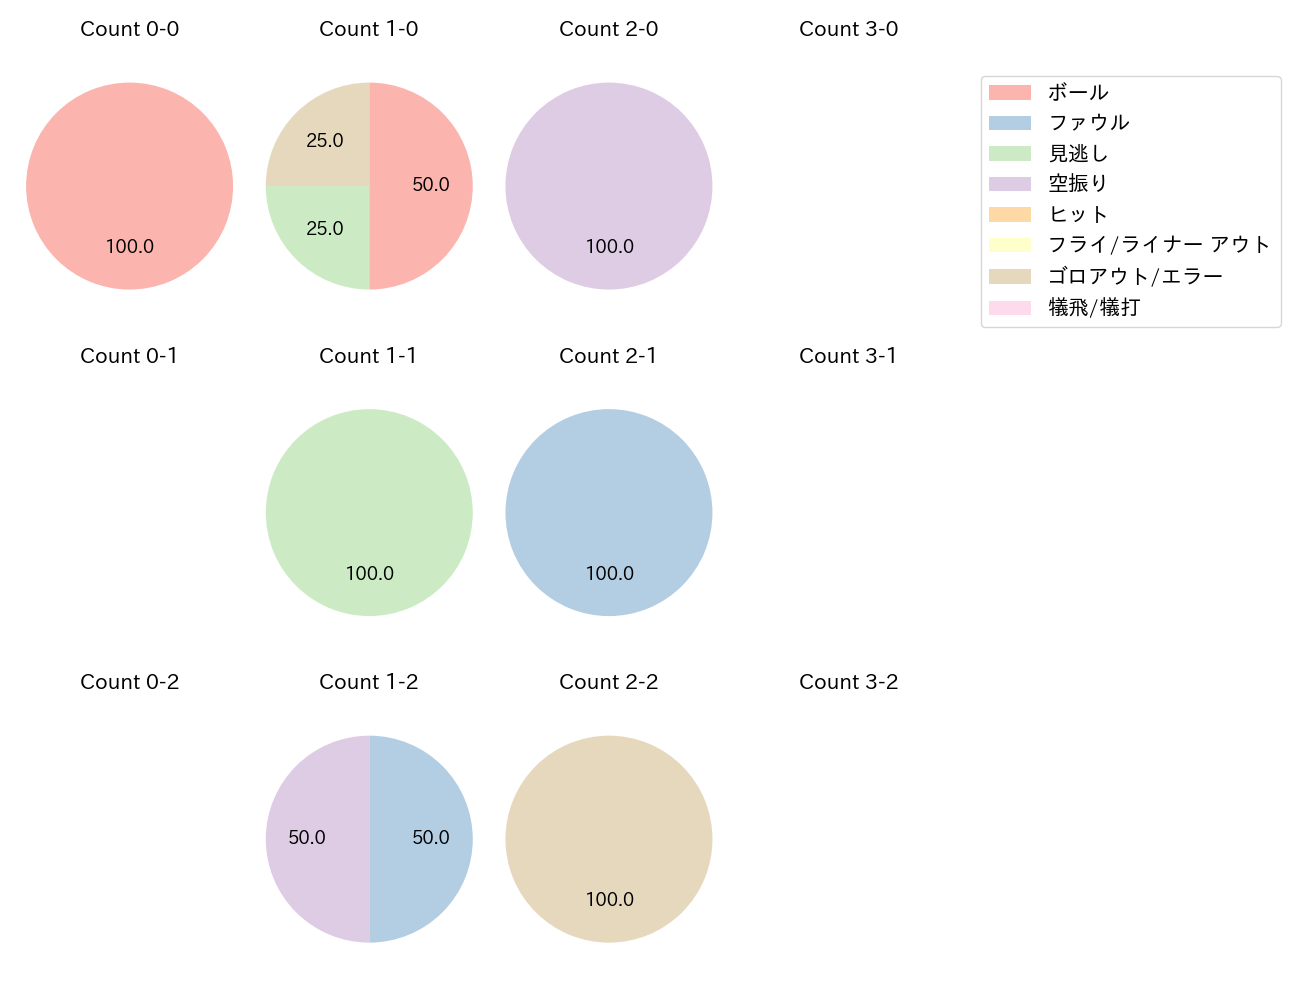 田中 和基の球数分布(2021年4月)